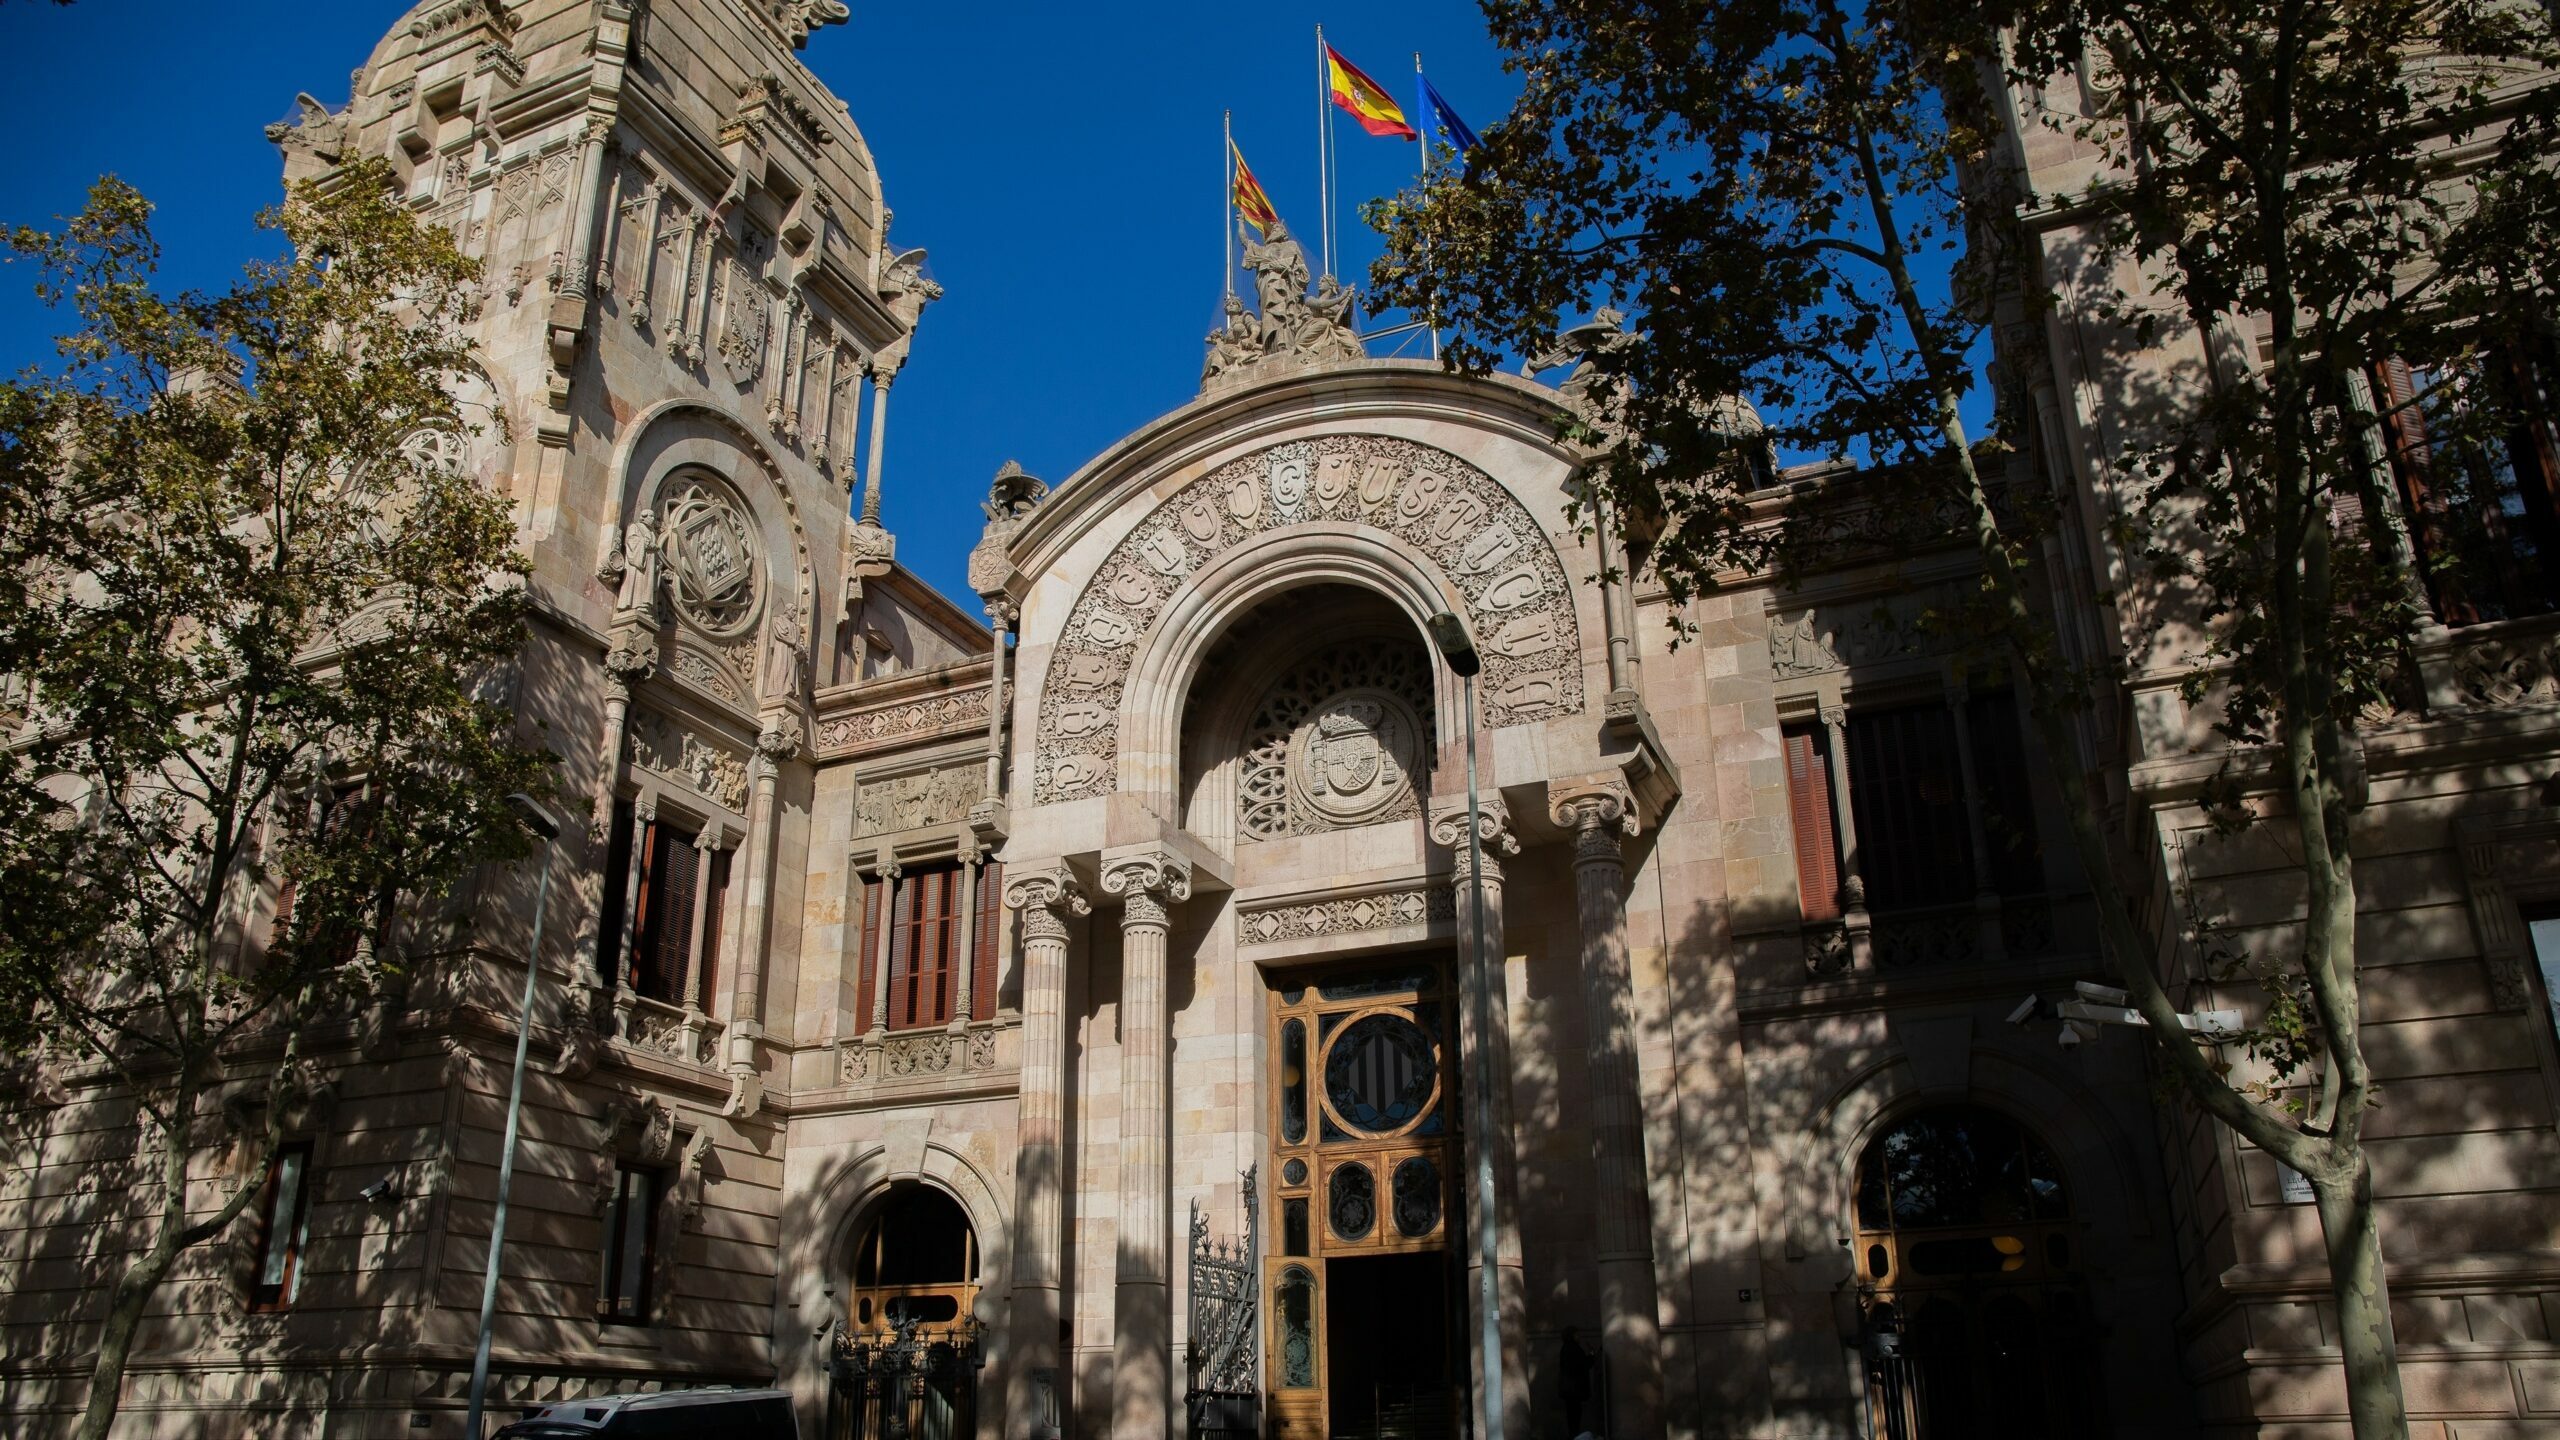 La Justicia catalana lleva al Constitucional la nueva normativa catalana sobre lenguas en la escuela